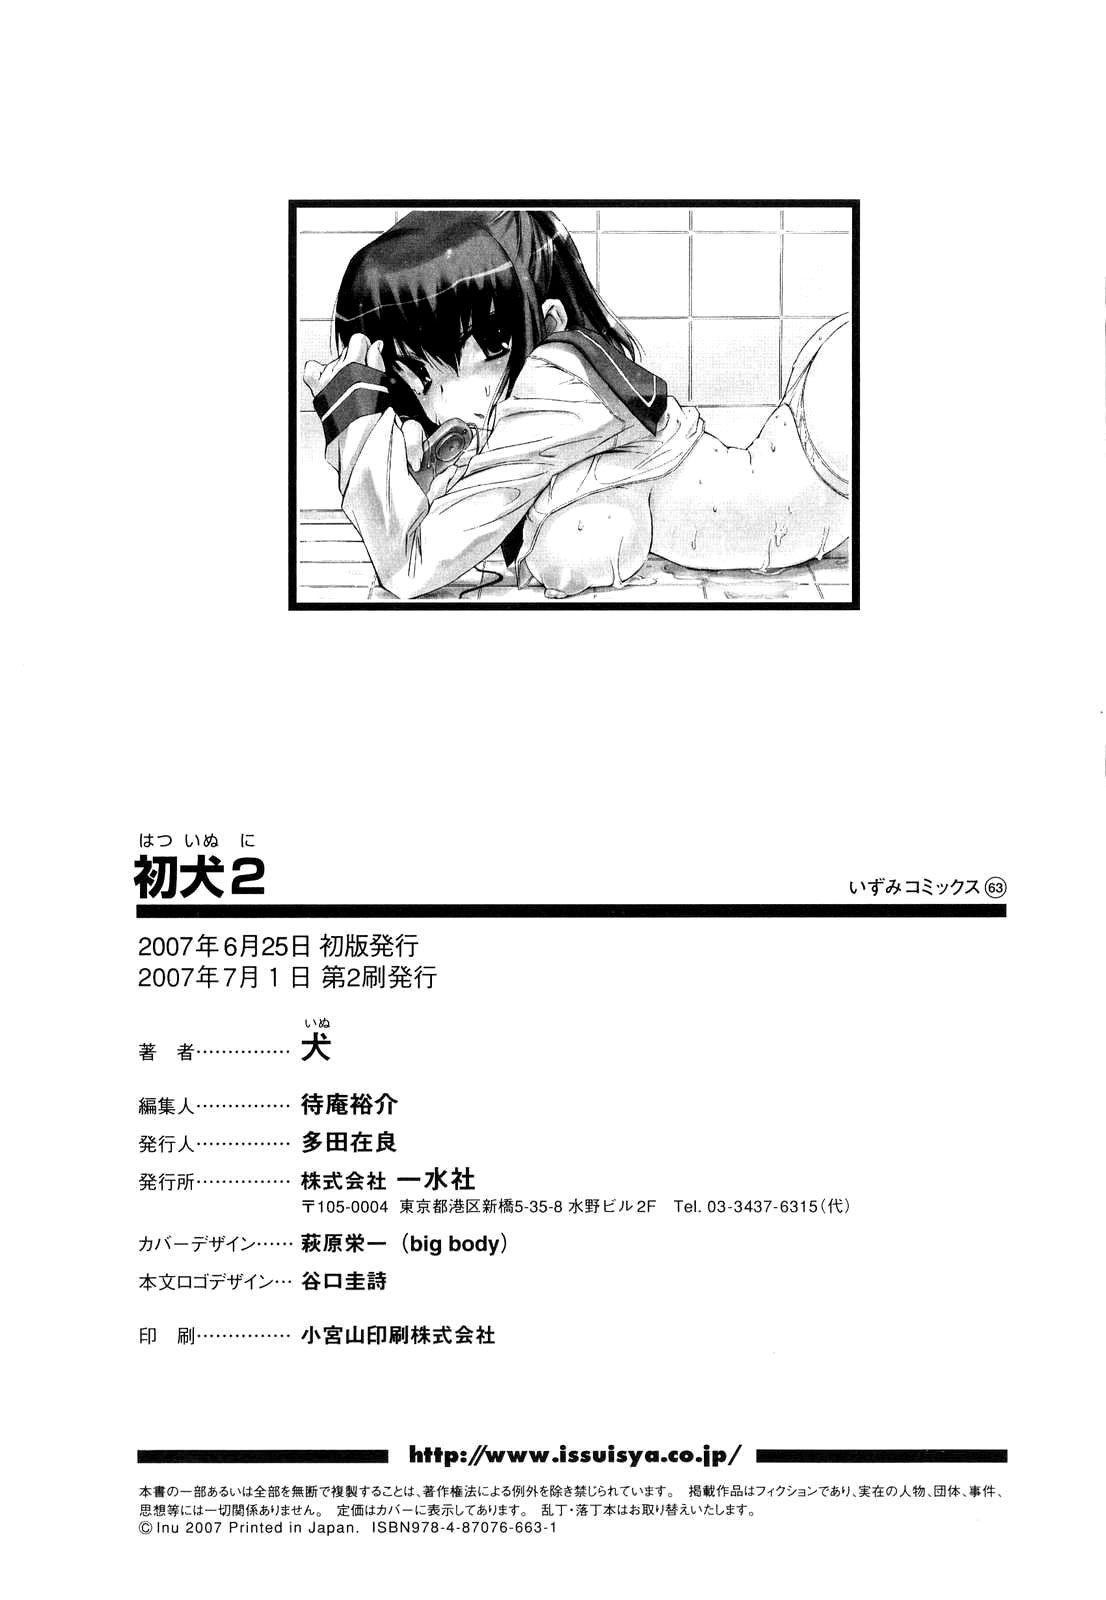 Casada Hatsu Inu Vol.2 Free 18 Year Old Porn - Page 156